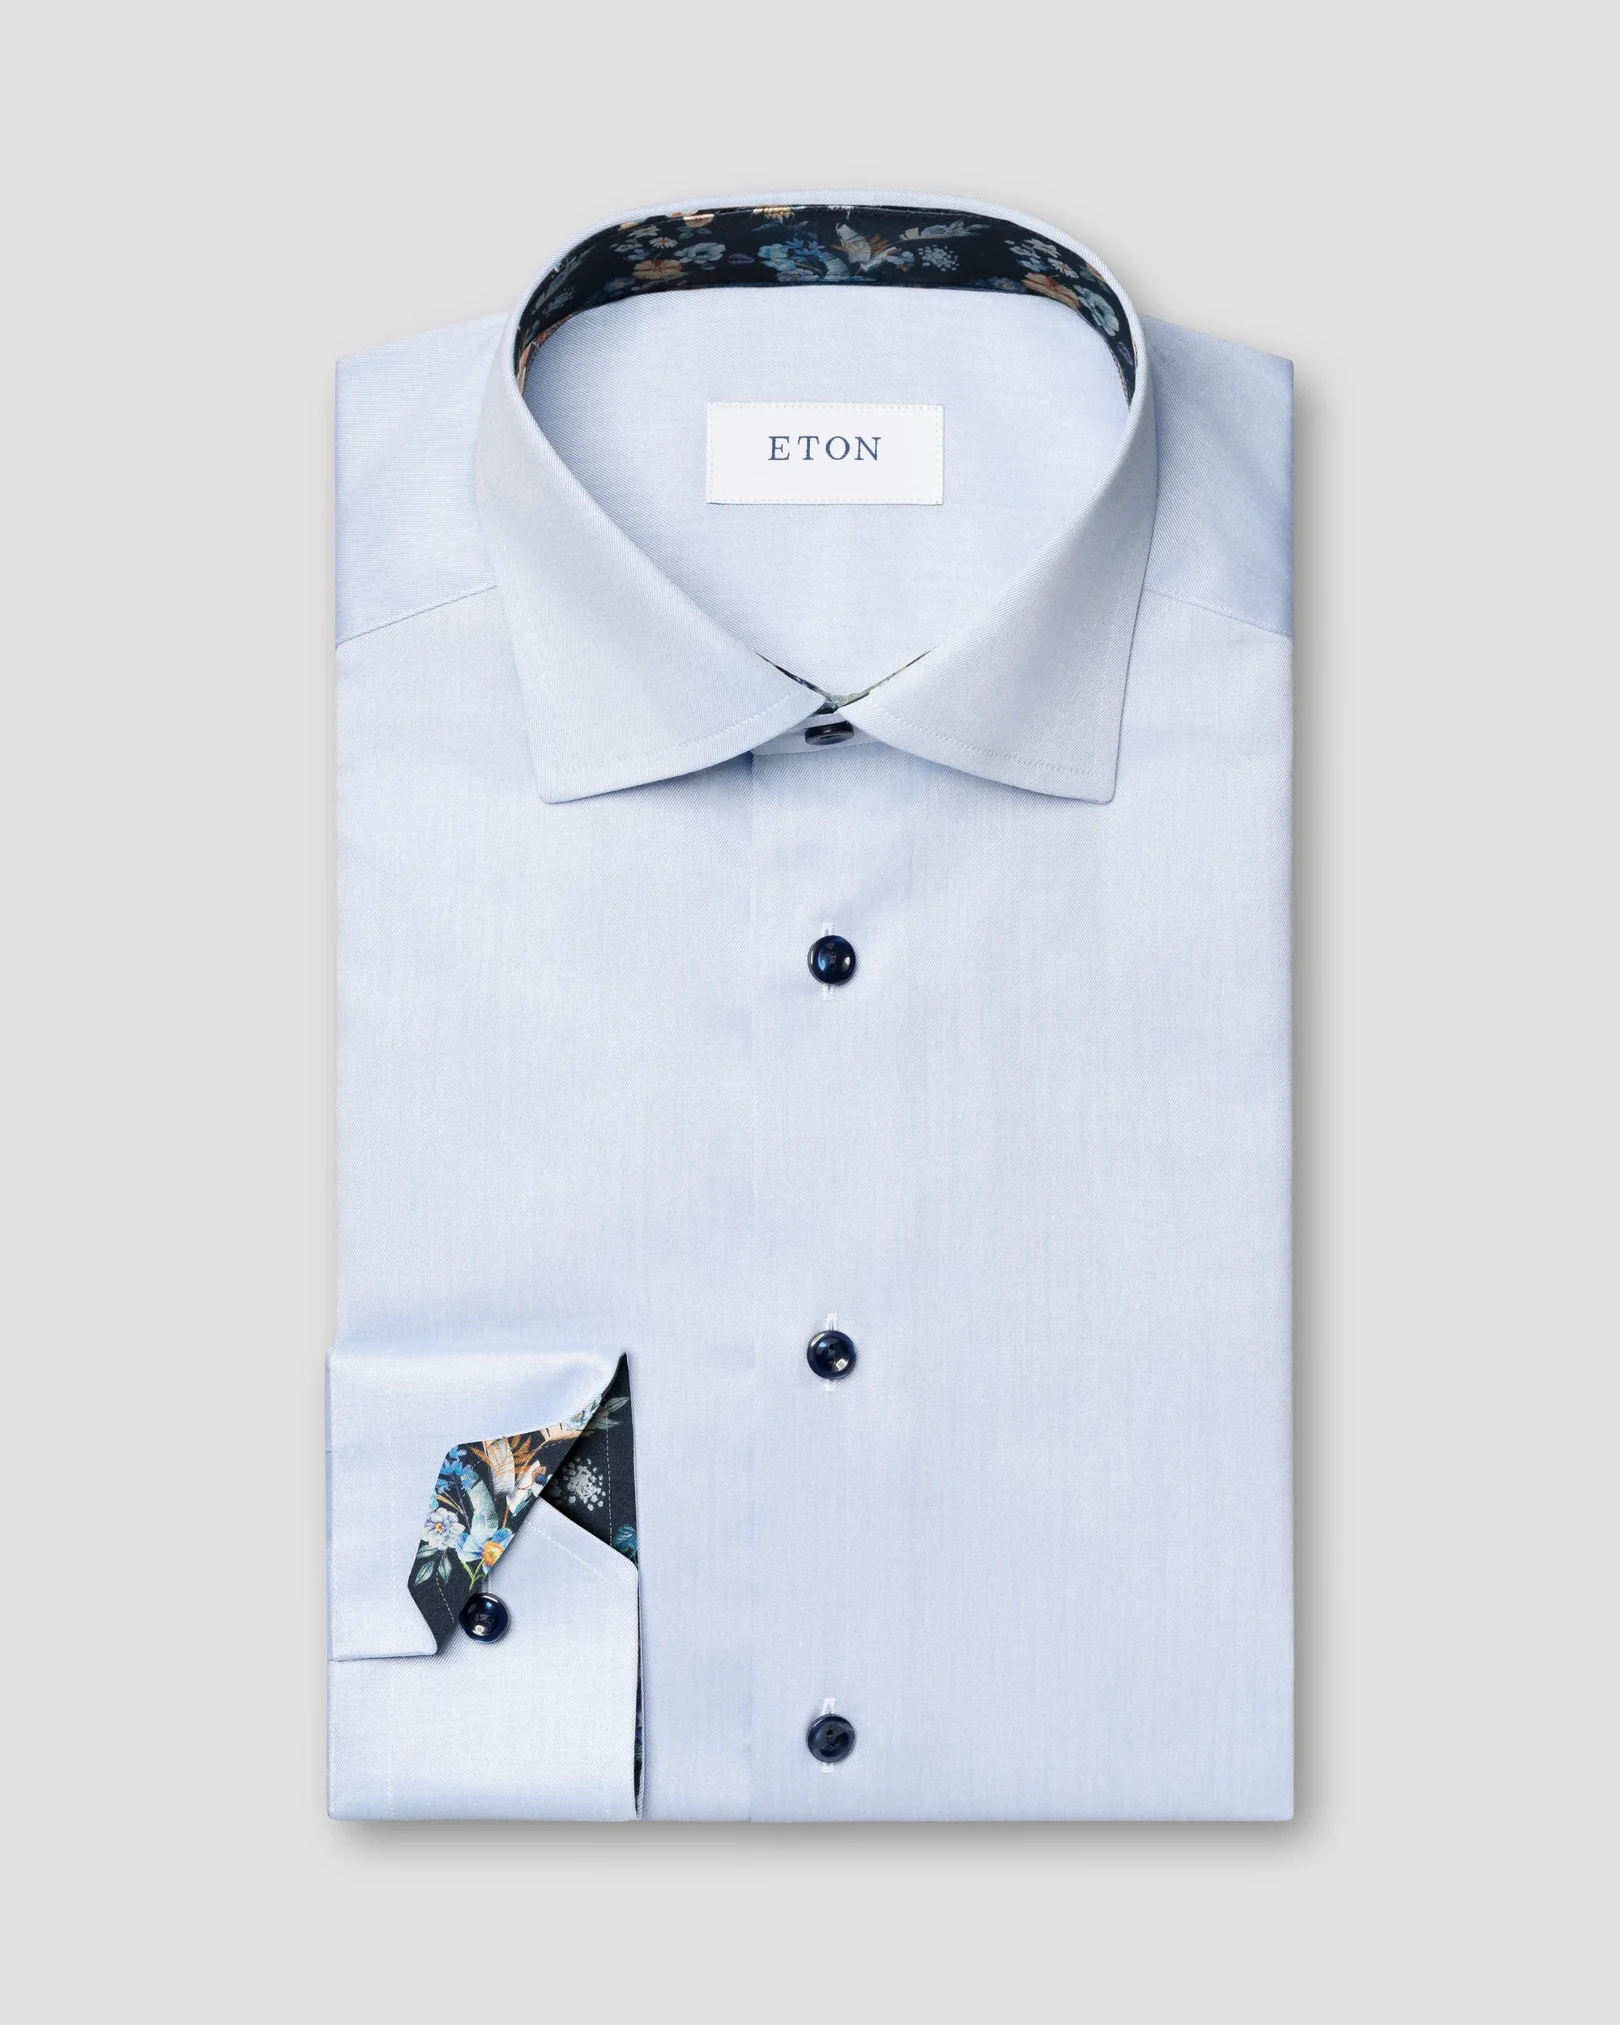 Eton - elegent floral contrast shirt